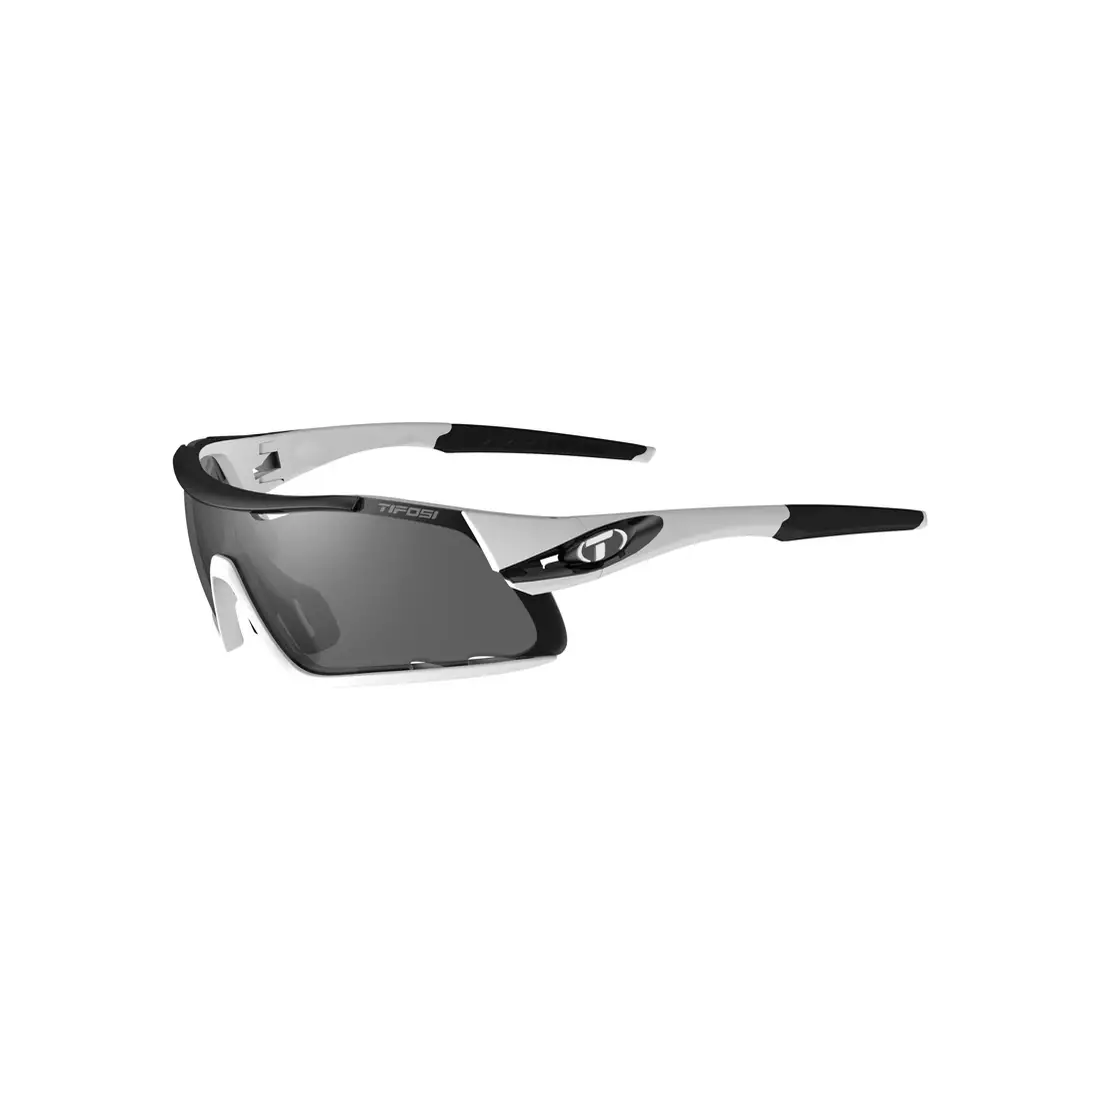 Sports glasses with interchangeable lenses TIFOSI DAVOS white black TFI-1460104801